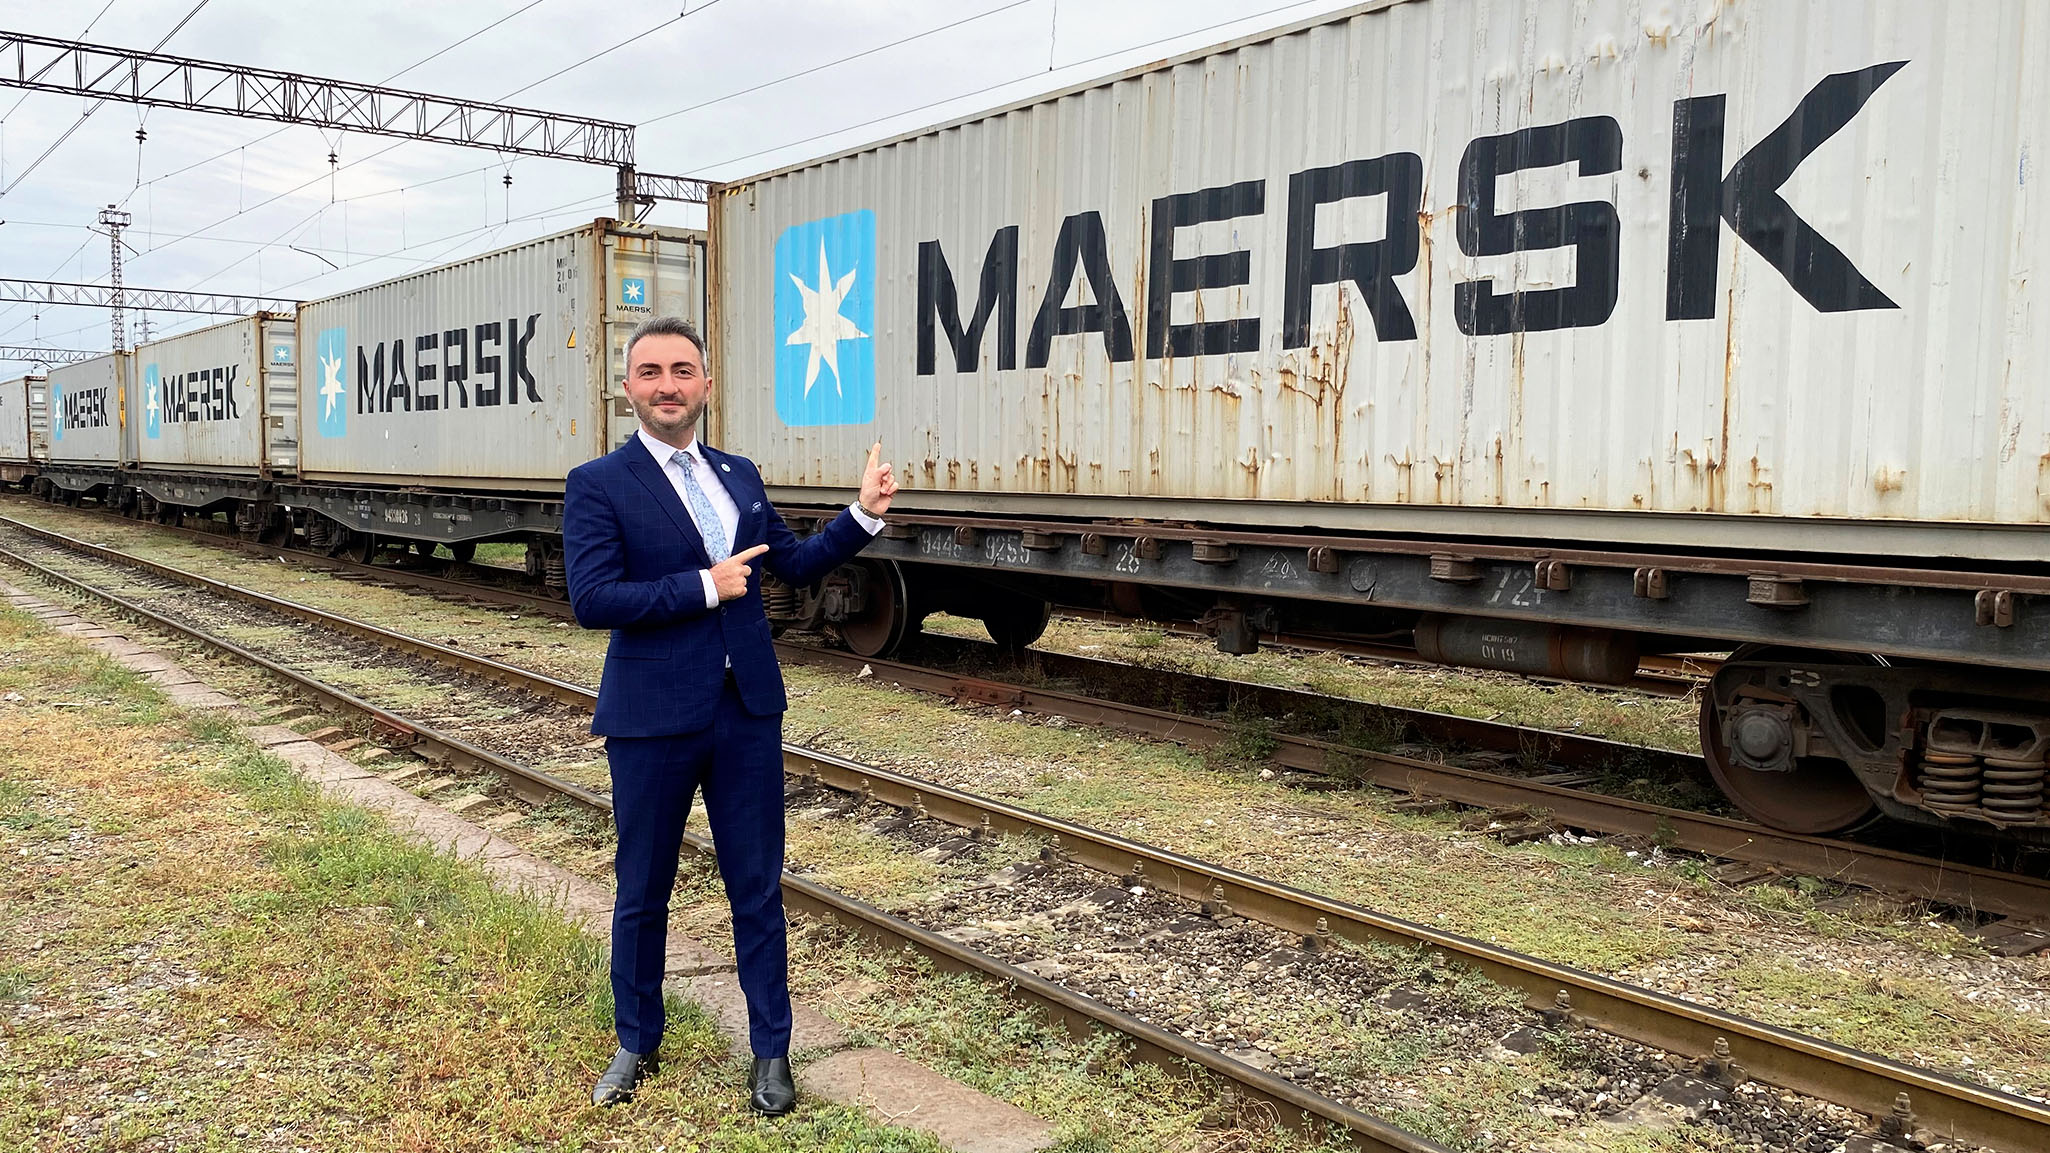 تويتر \ Maersk على تويتر: "Maersk's first block train from China arrives in Georgia. Our intercontinental rail product portfolio expands, with the recent introduction of a block train solution for our customers.